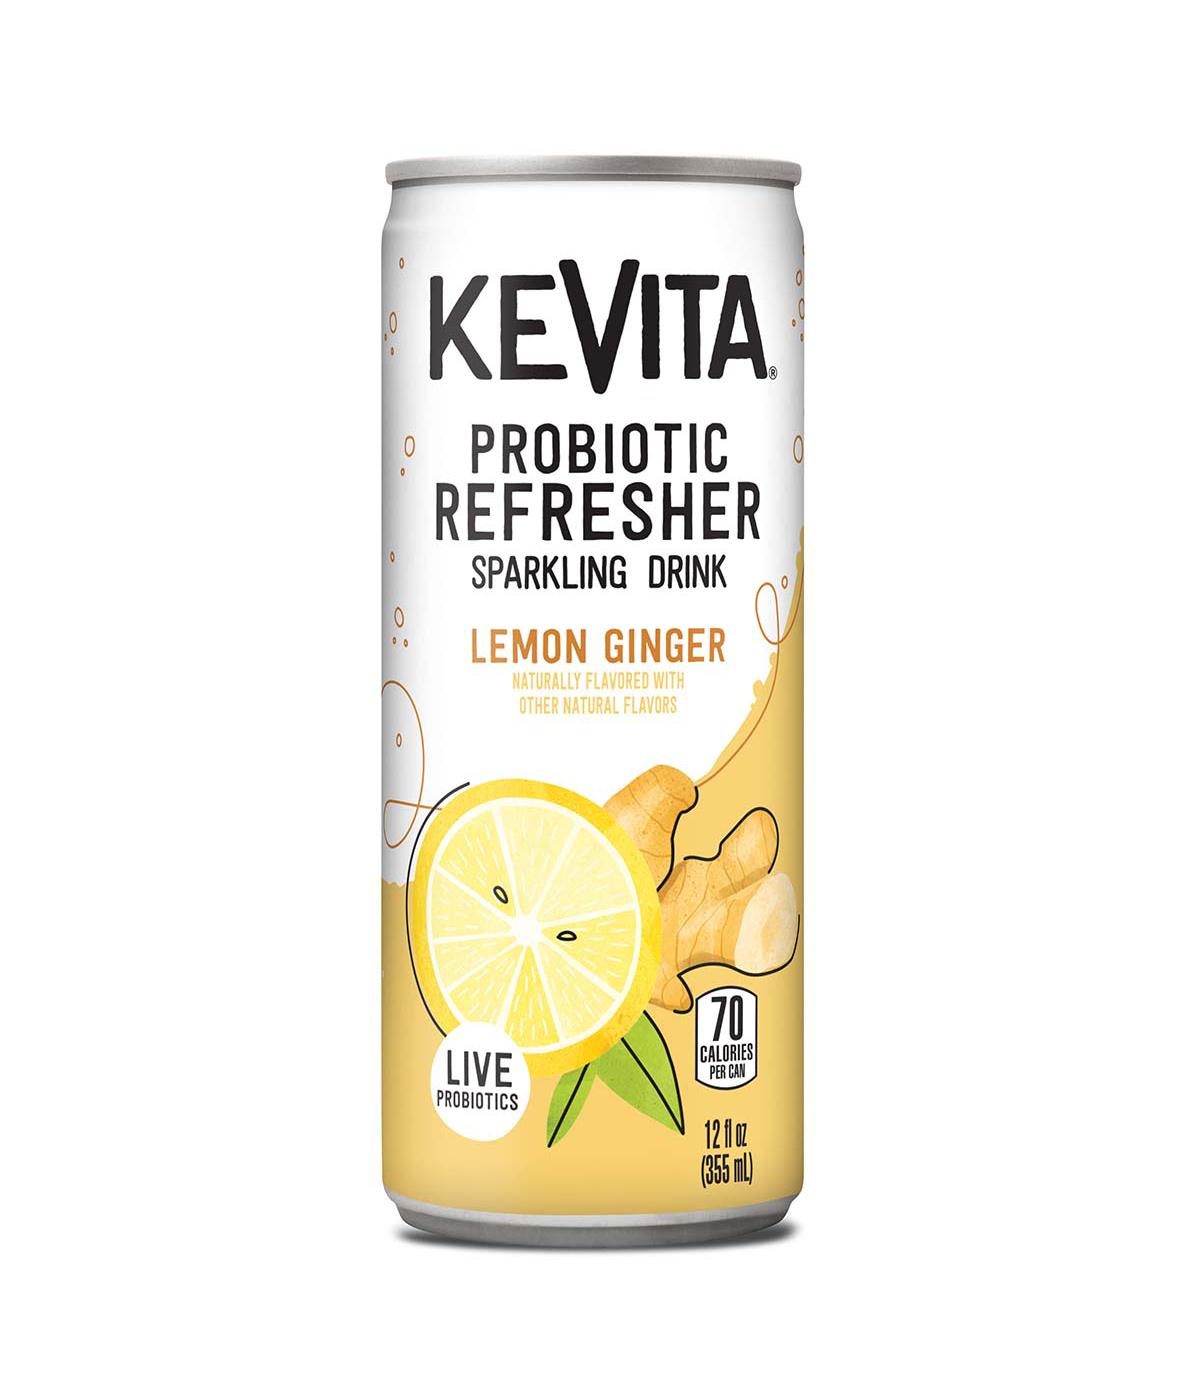 KeVita Probiotic Refresher Sparkling Lemon Ginger Drink; image 1 of 3